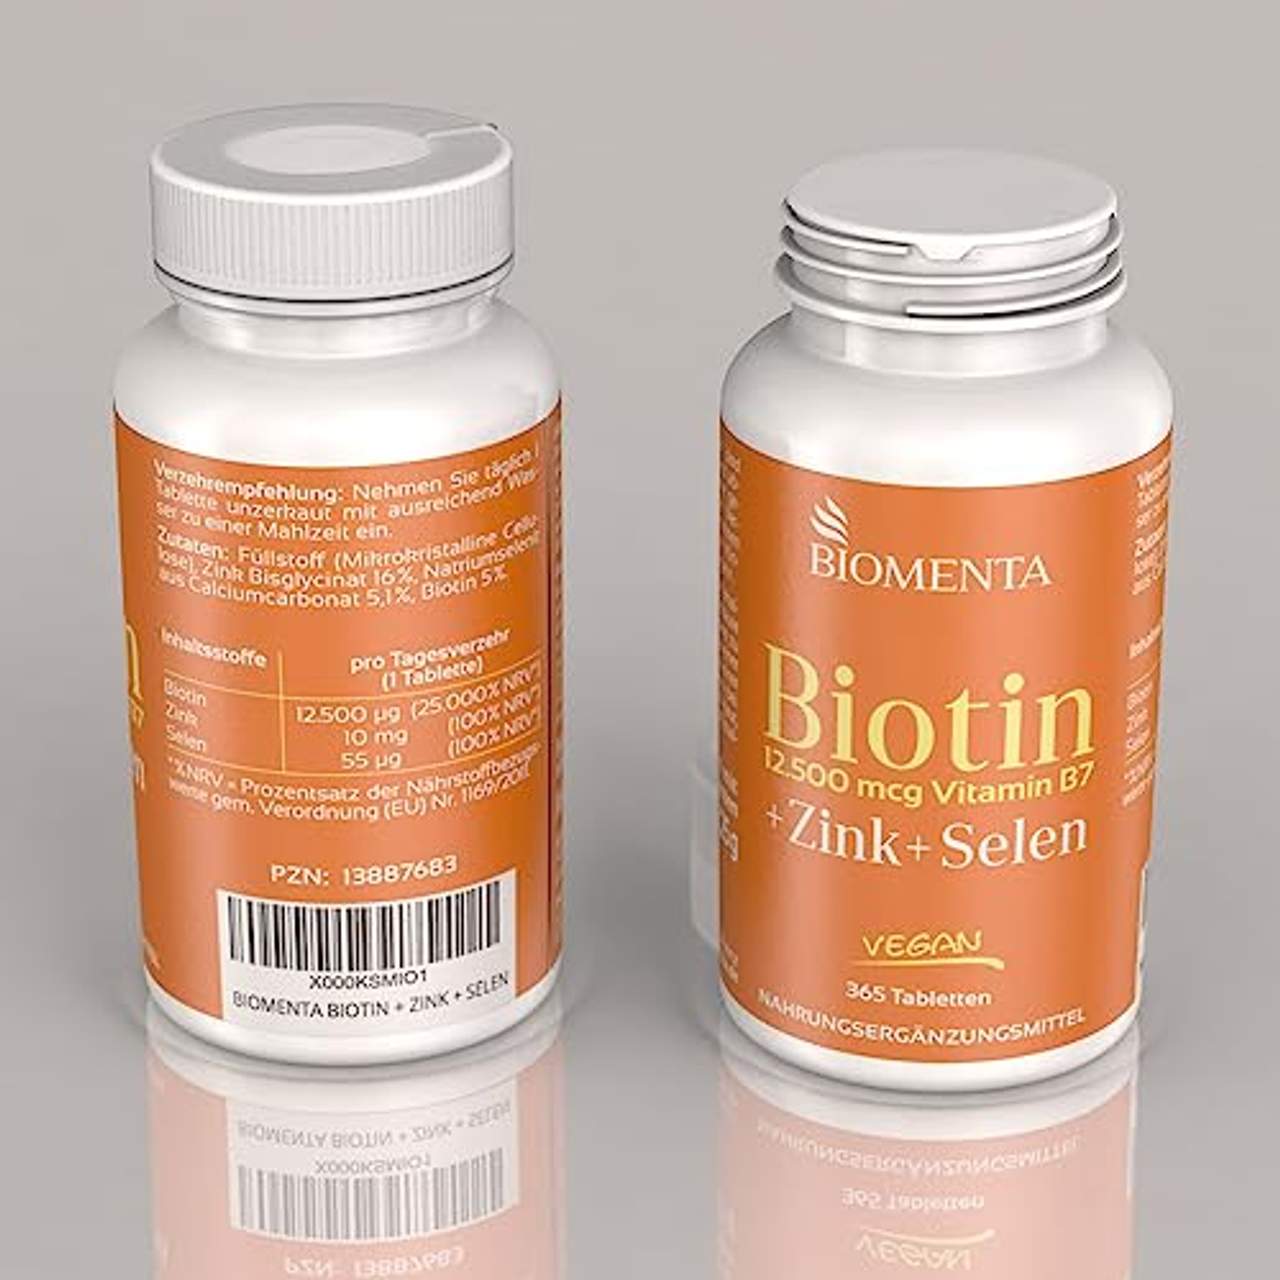 BIOMENTA Biotin hochdosiert mit 12.500 mcg